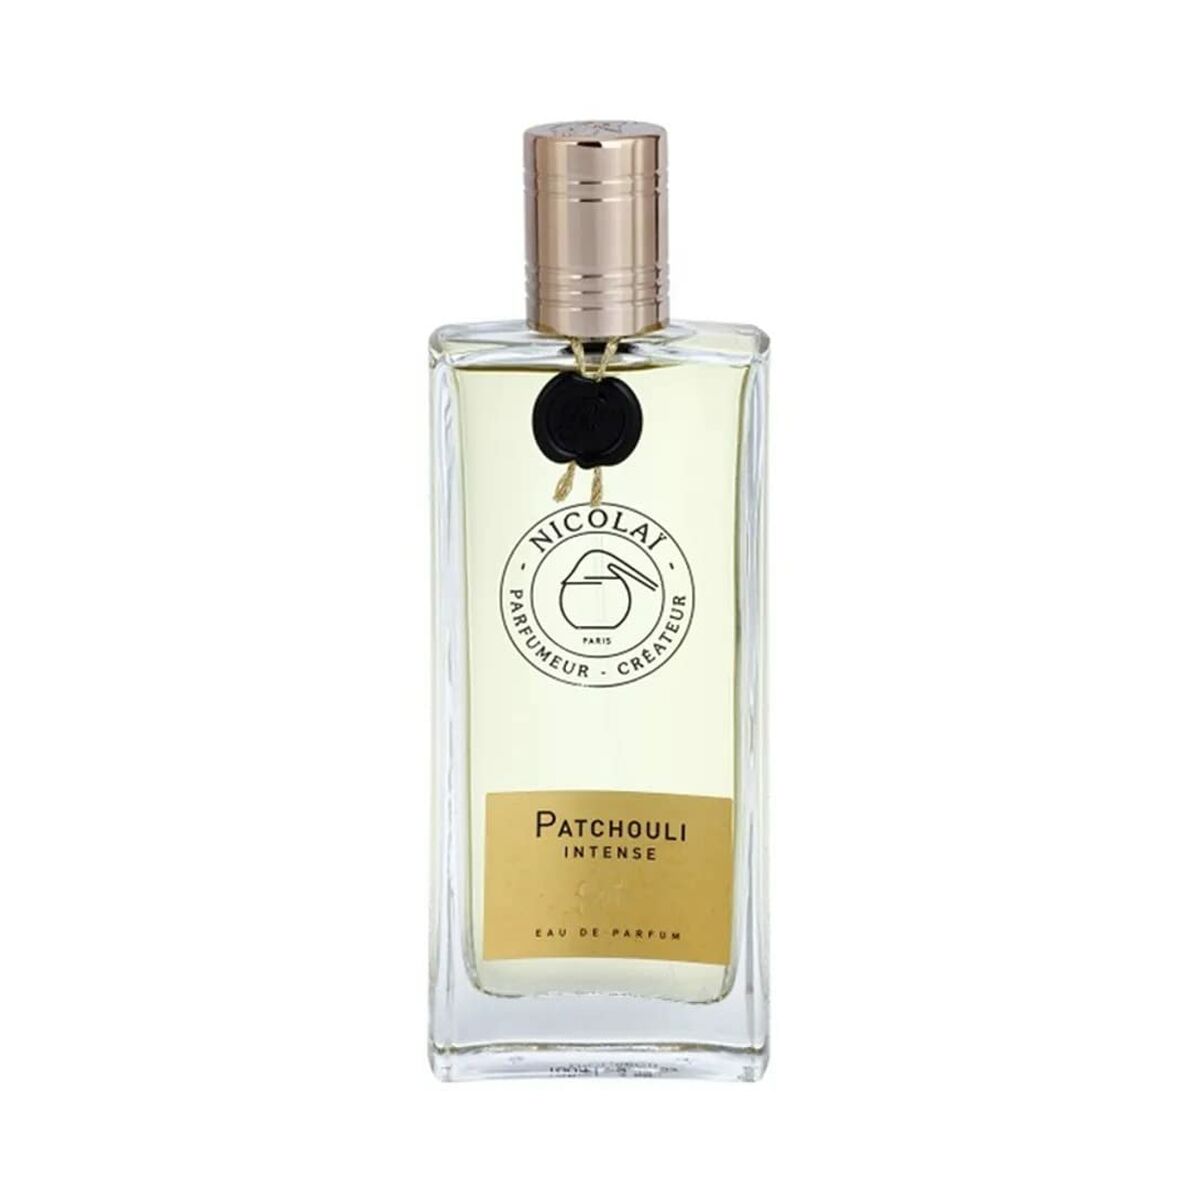 Uniseks Parfum Nicolai Parfumeur Createur EDP Patchouli Intense 100 ml